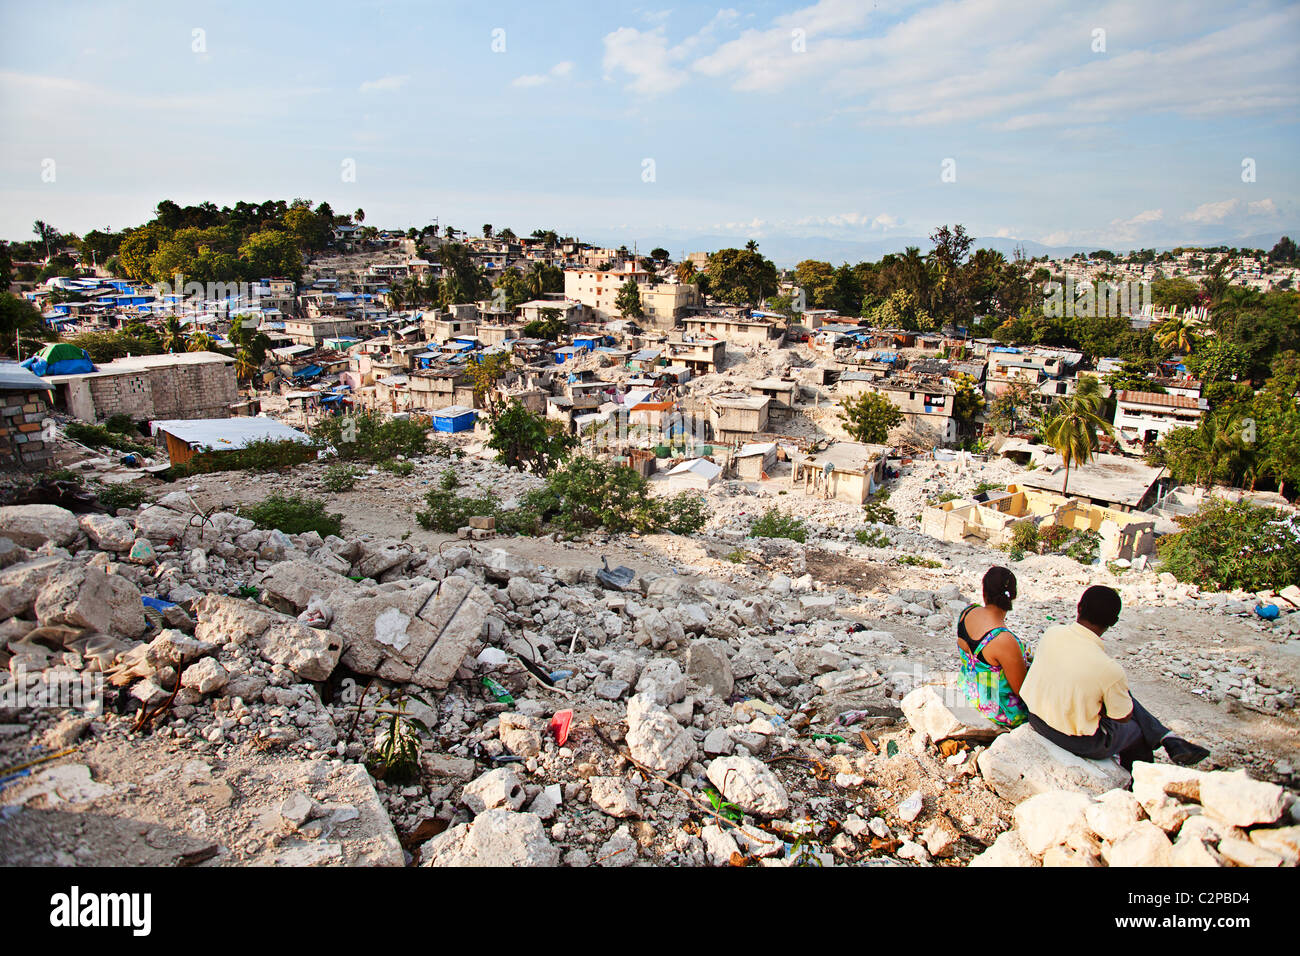 Ruines de port au prince un an après le séisme de 2010, Haïti Banque D'Images